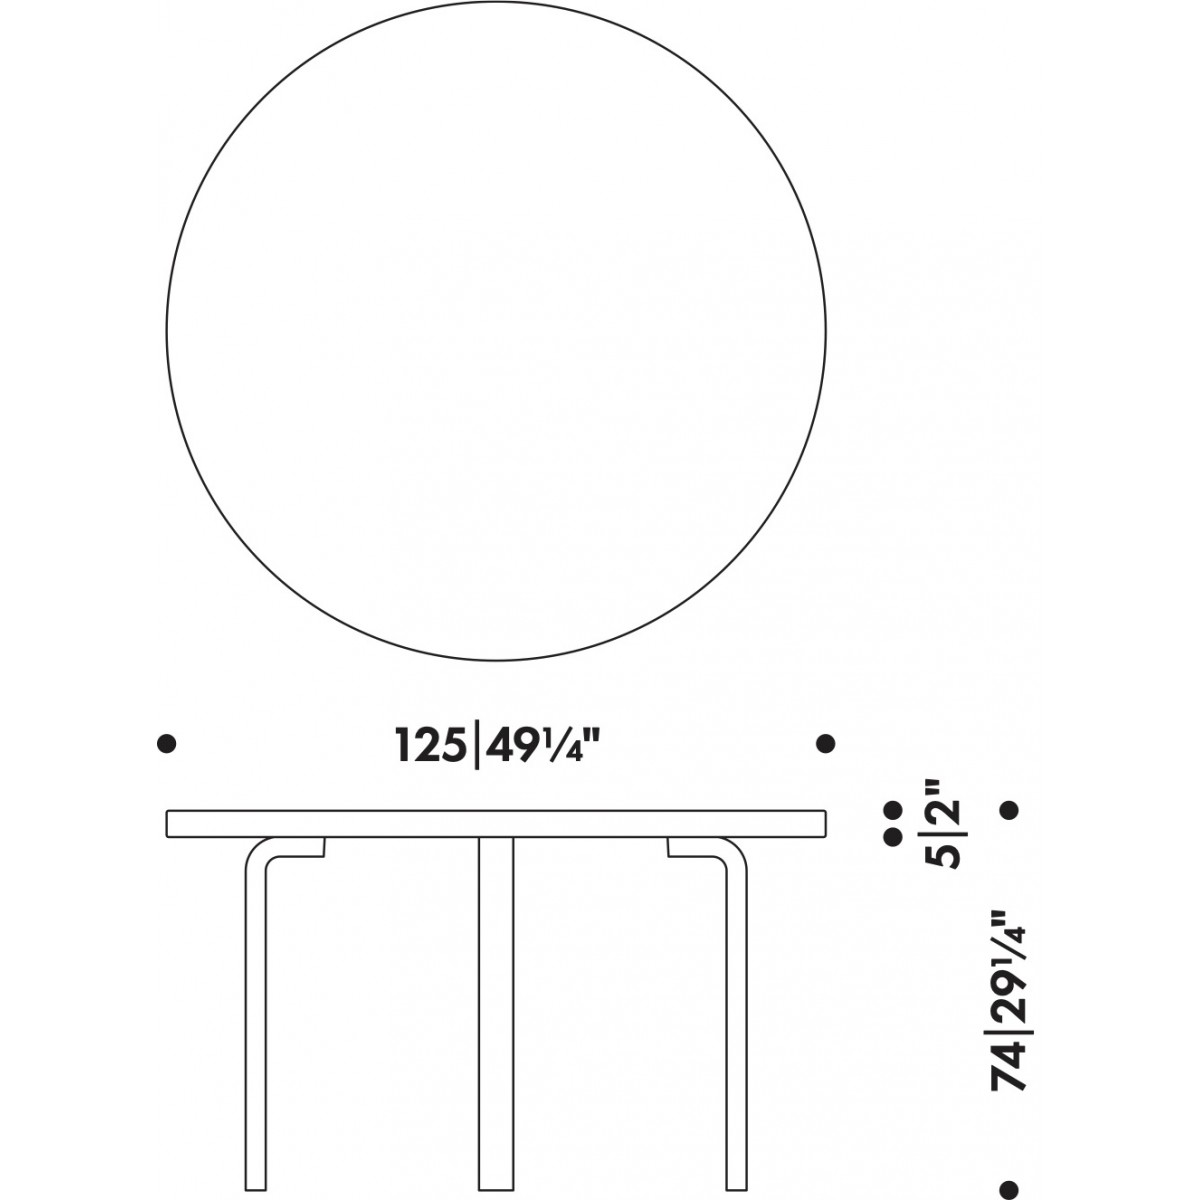 Ø125cm - table 91